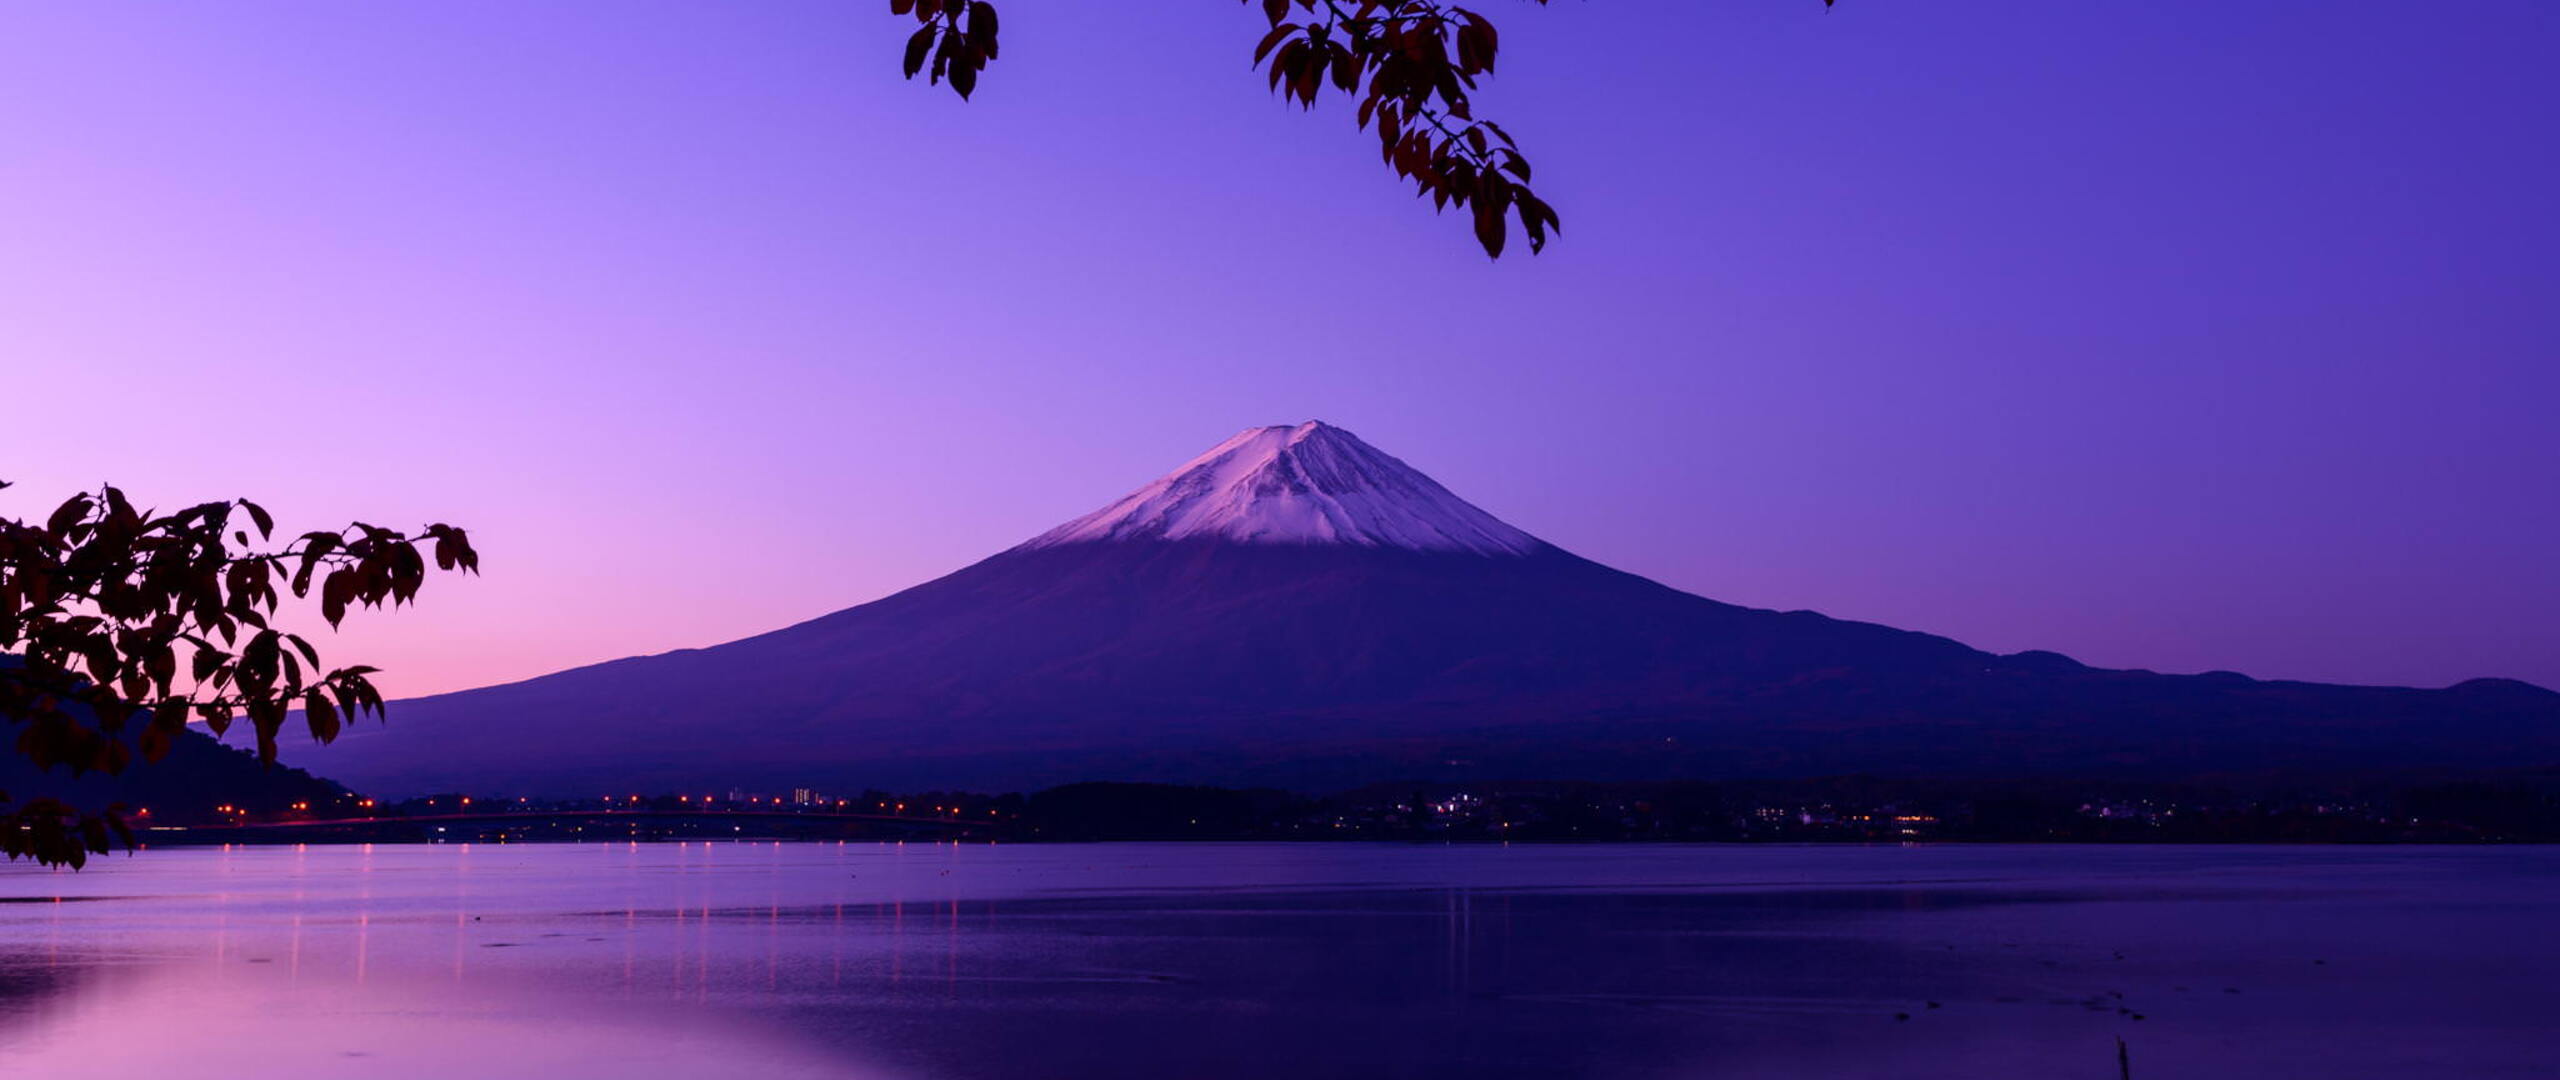 Mount Fuji, Japan скачать